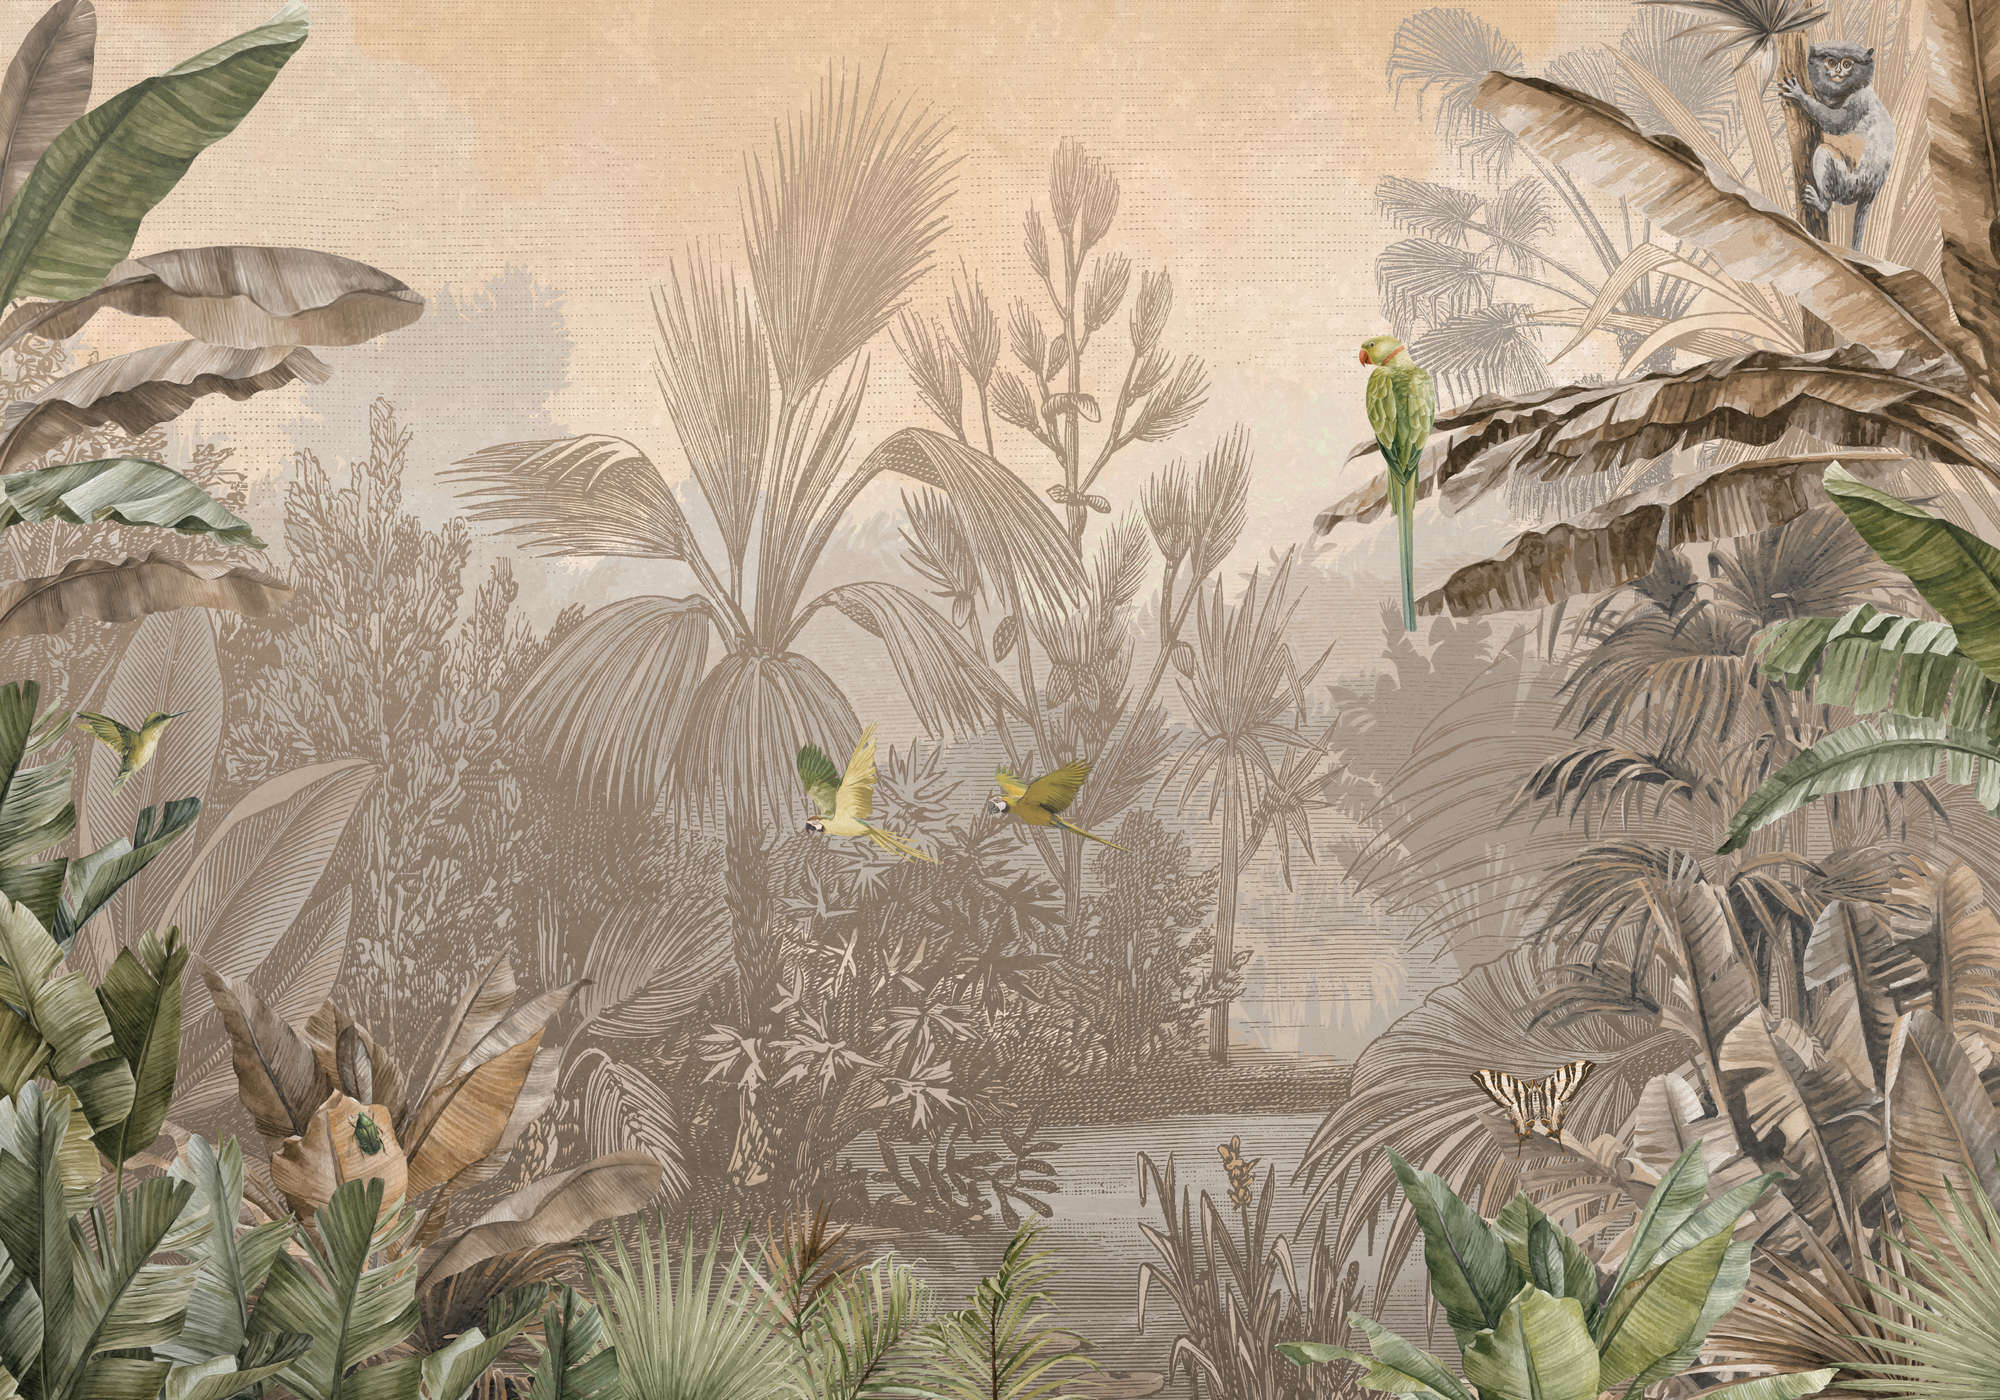             Dschungel Fototapete braun-grün im Zeichenstil
        